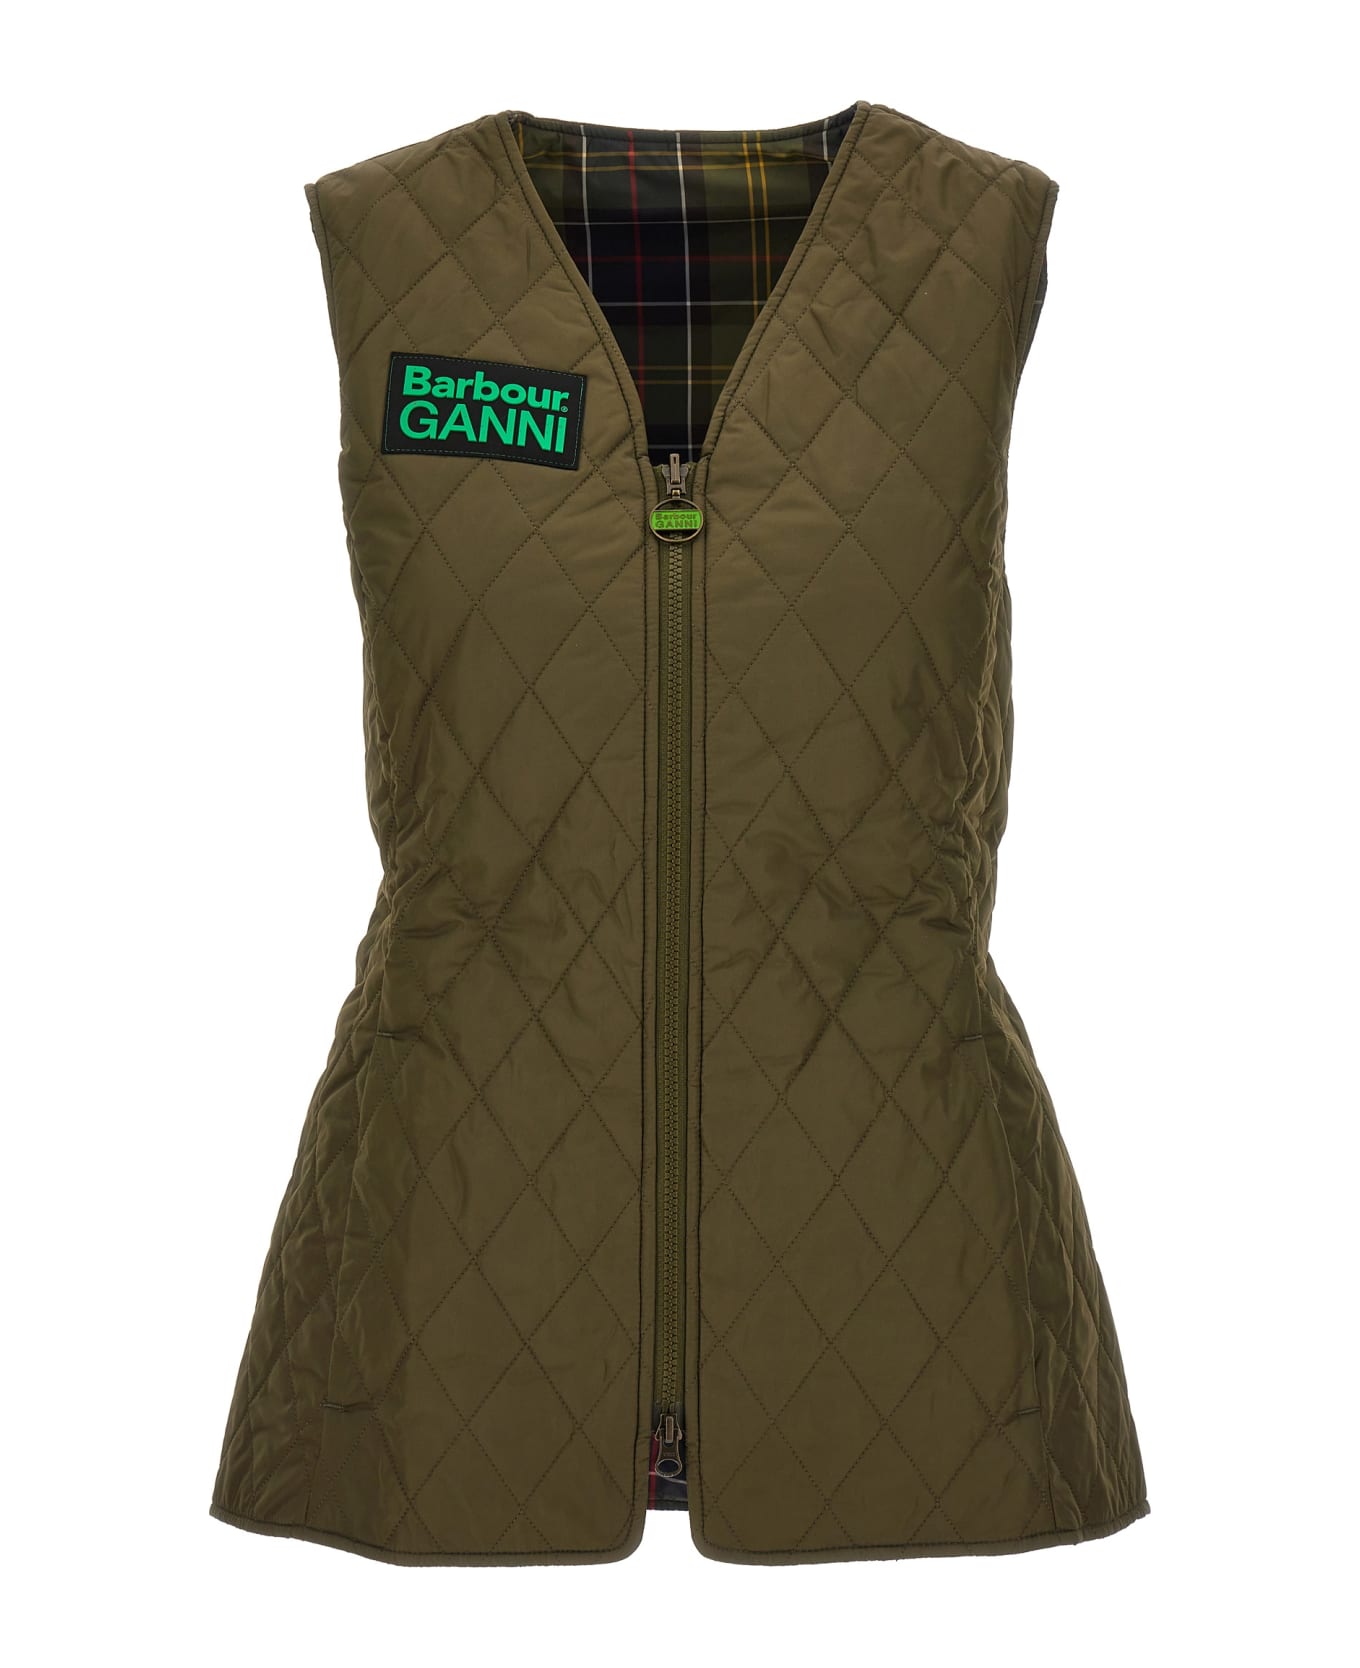 Barbour X Ganni 'betty' Reversible Vest - Multicolor